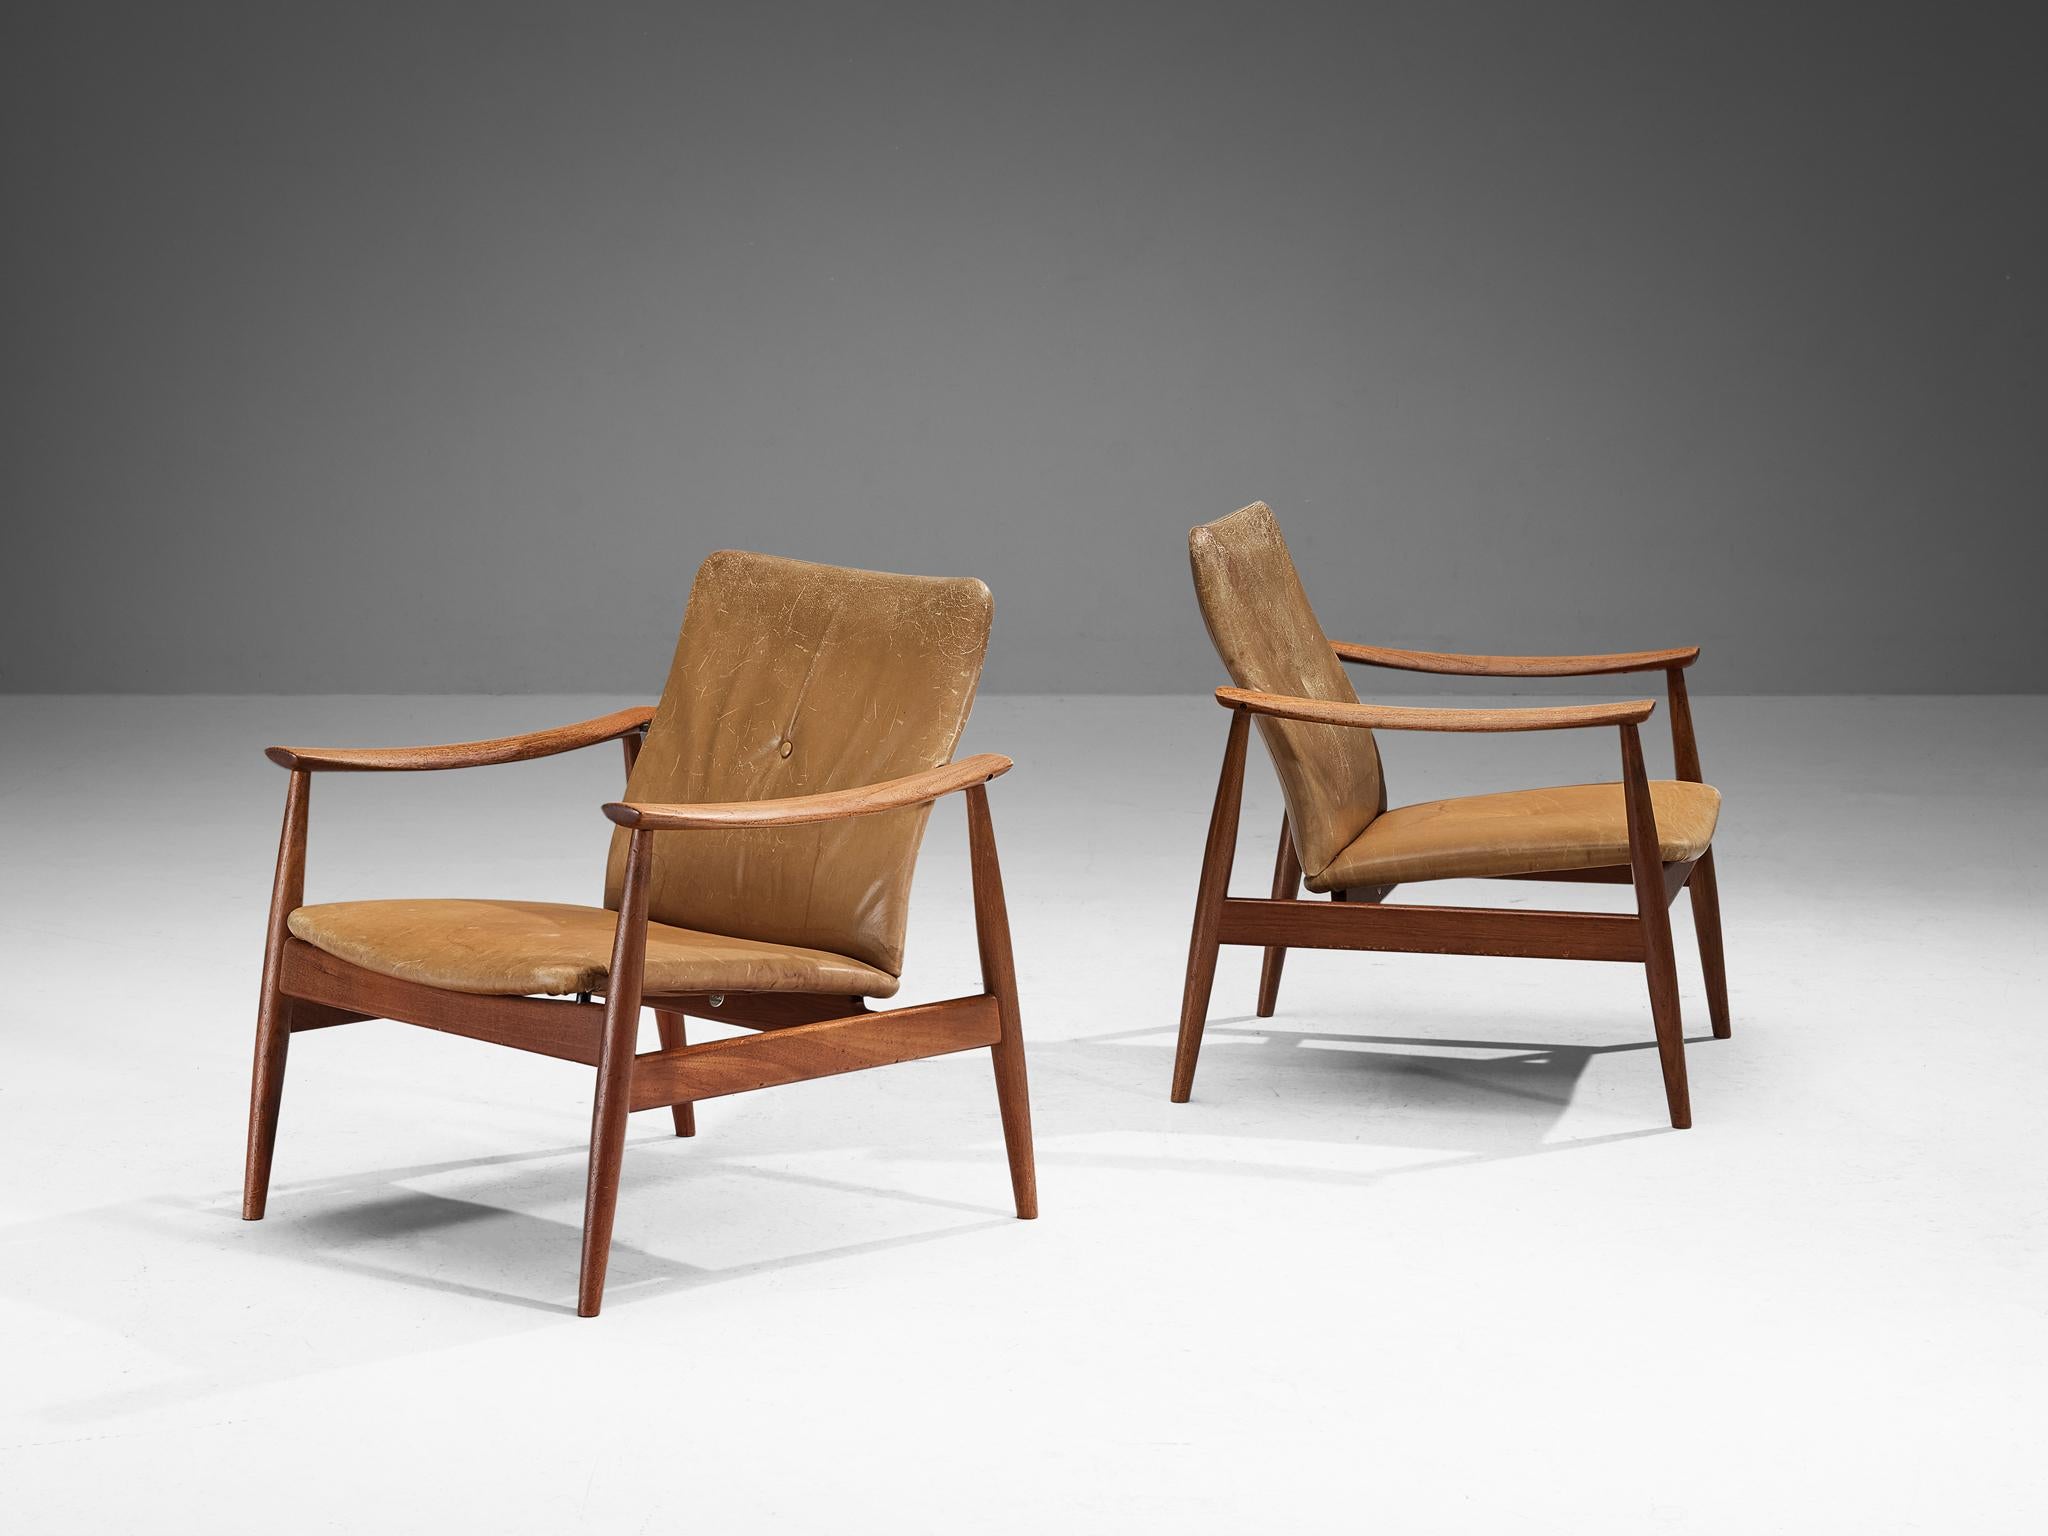 Finn Juhls pour France & Søn, paire de chaises longues n° 138, teck, cuir, Danemark, design vers 1959

Ces chaises faciles ont été conçues par le maître designer danois Finn Juhl en 1959. Défini par un cadre organique élégant en teck magnifique, ses